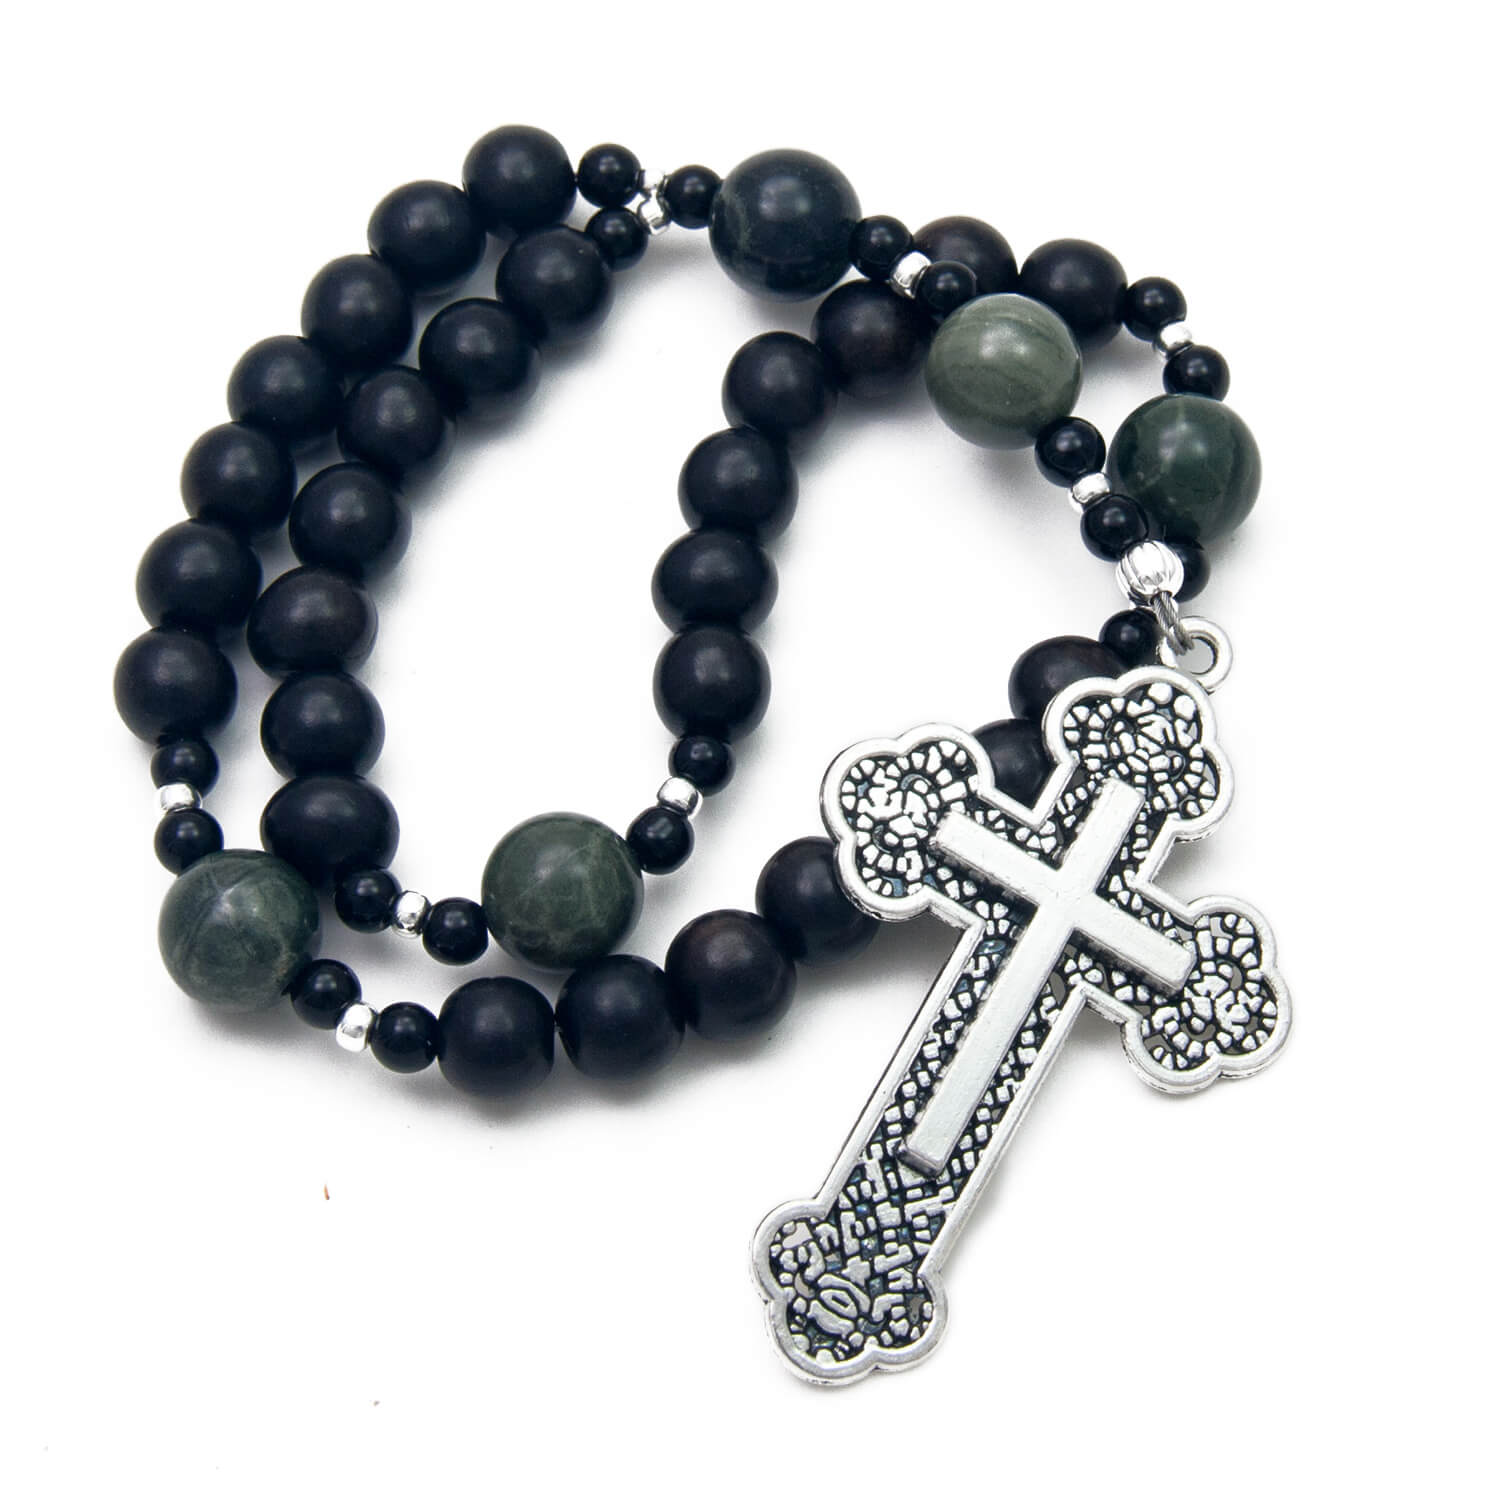 Ebony & Jasper Prayer Beads (8MM)